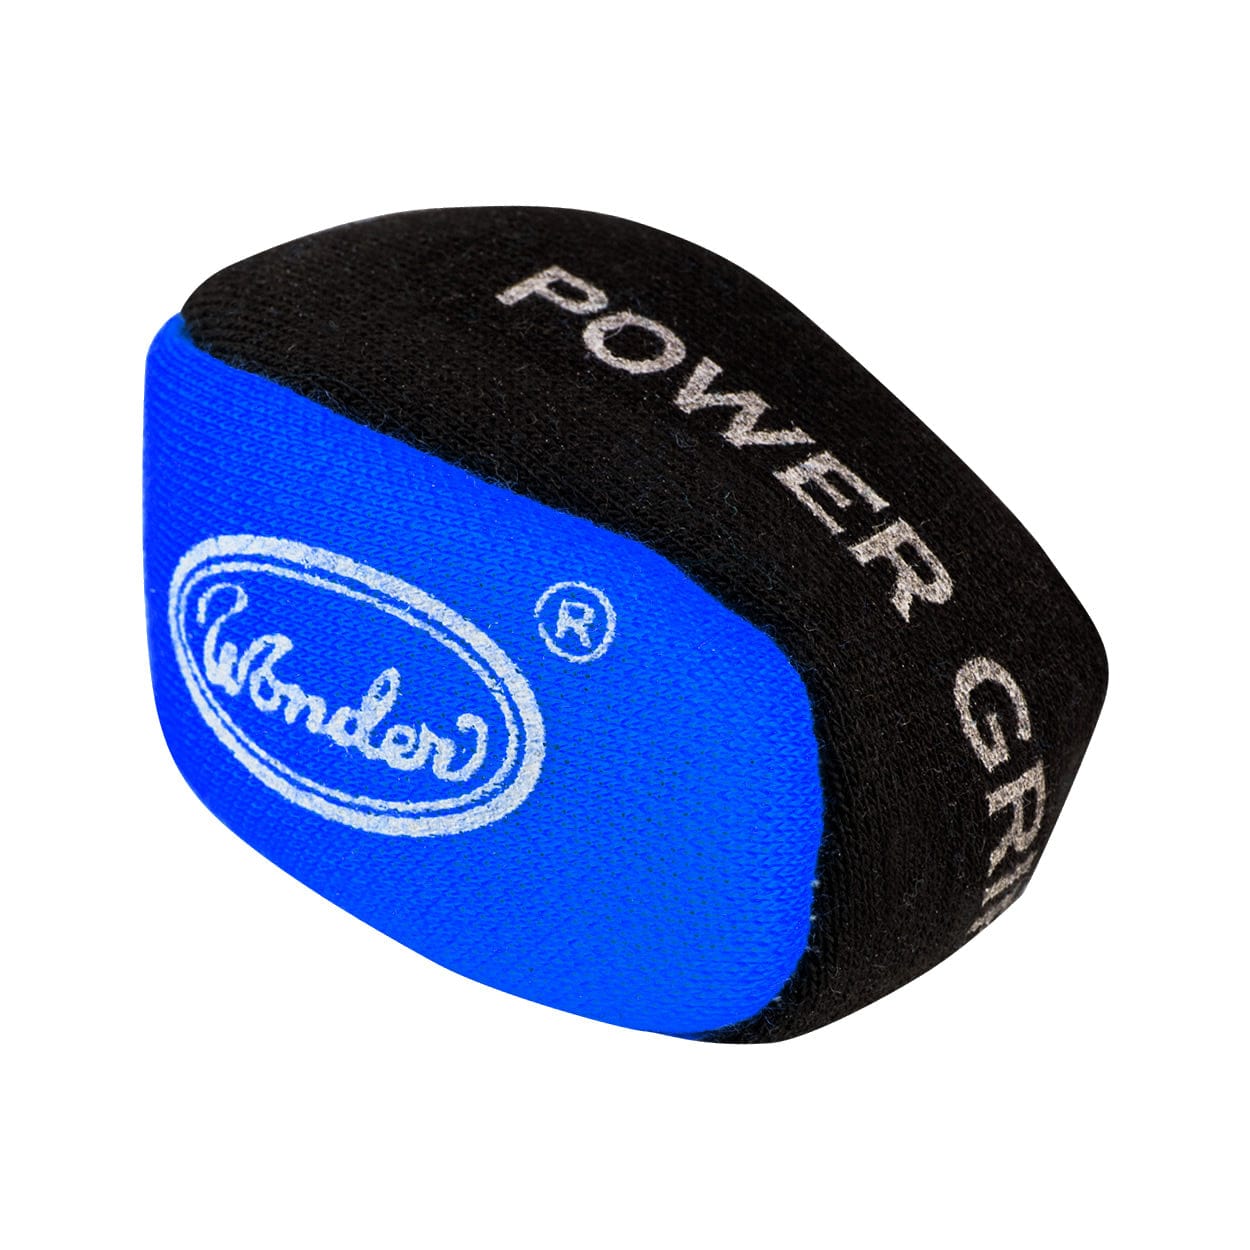 Designa Power Grip Ball - For Better Grip Dart Control - Absorbs Moisture Blue